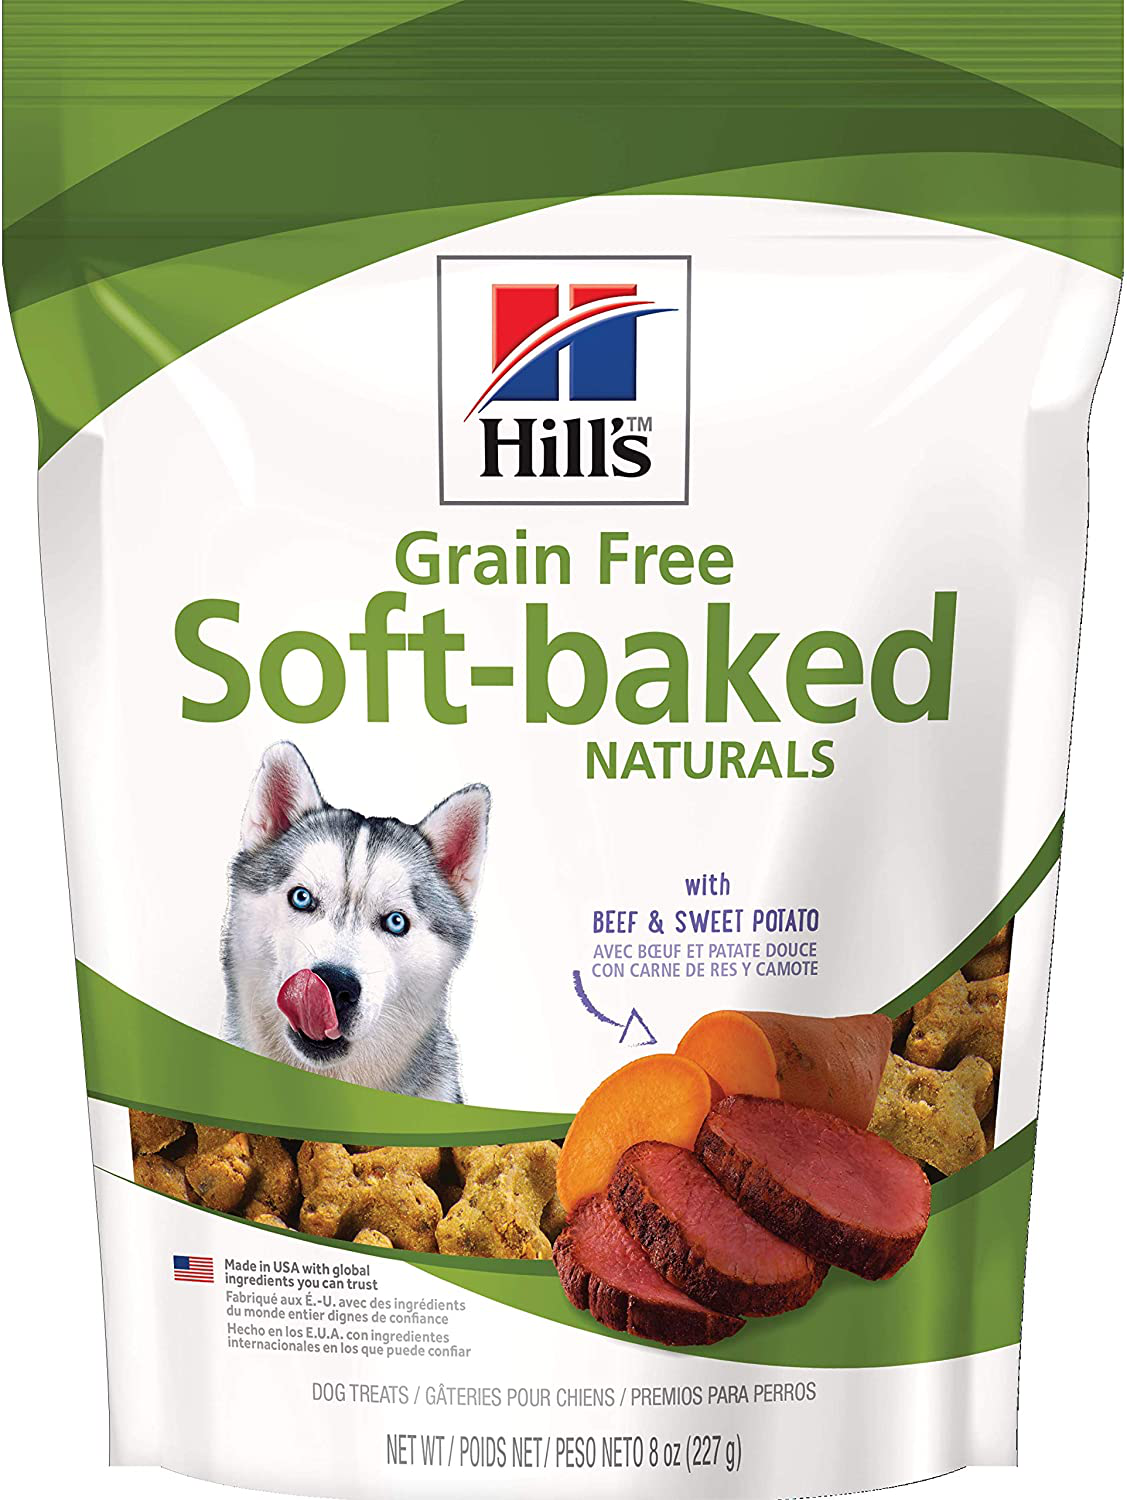 Hill’S Grain Free Soft-Baked Naturals Dog Treats Bundle Animals & Pet Supplies > Pet Supplies > Dog Supplies > Dog Treats Hill's Pet Nutrition Sales, Inc. Beef & Sweet Potatoes  